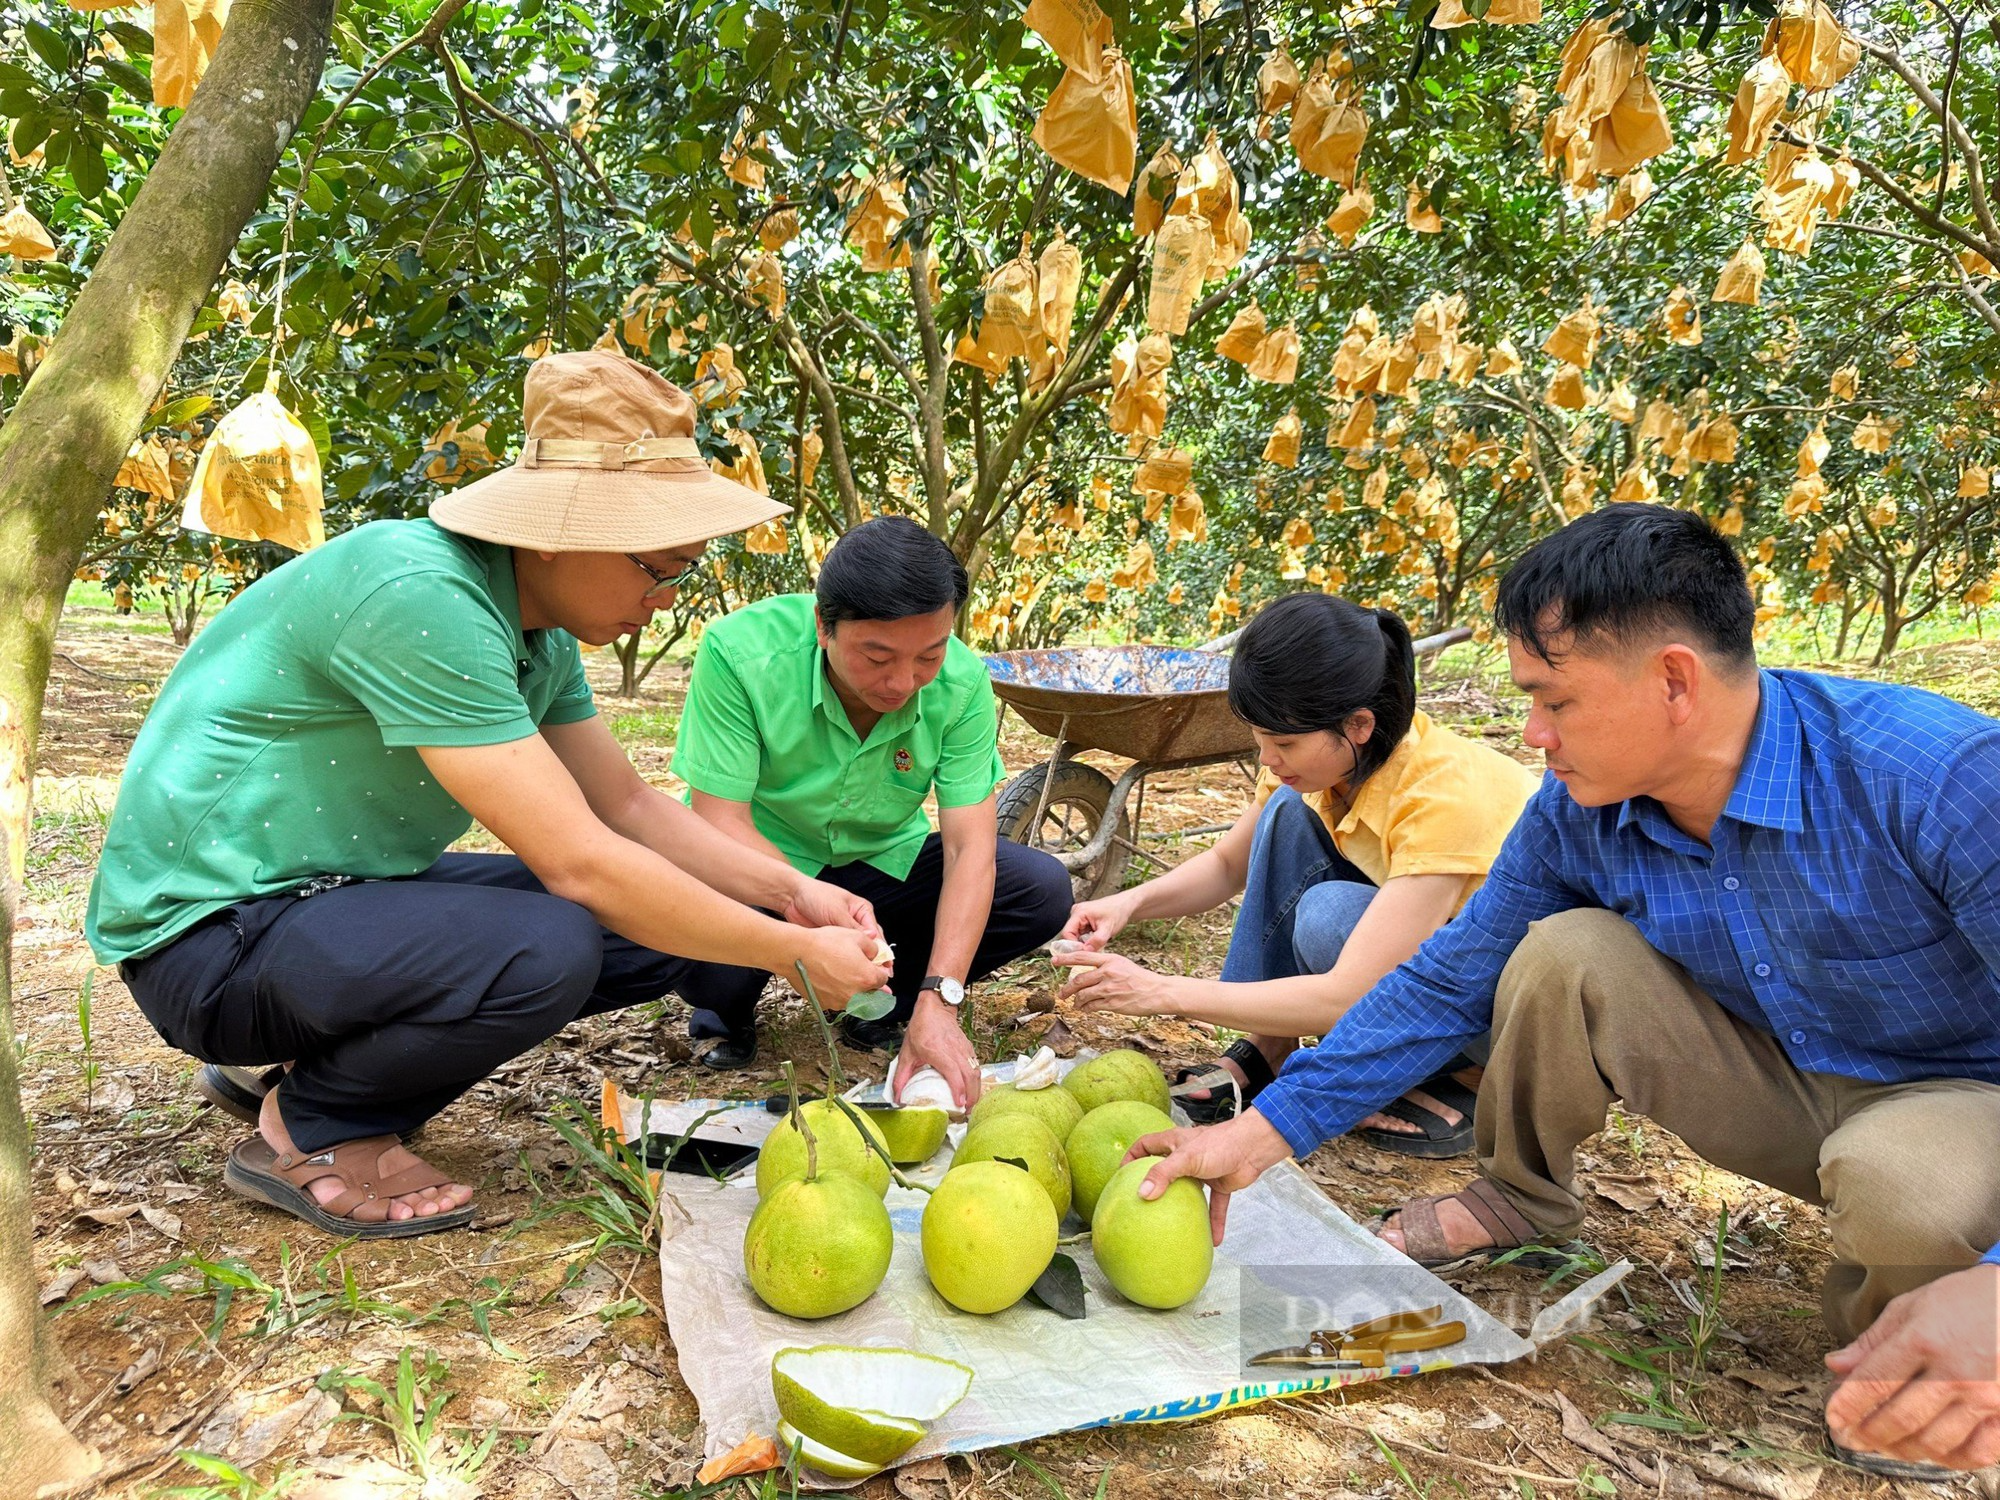 Hà Tĩnh: Thứ quả đặc sản giúp huyện miền núi Hương Khê thu về gần 590 tỷ đồng - Ảnh 5.